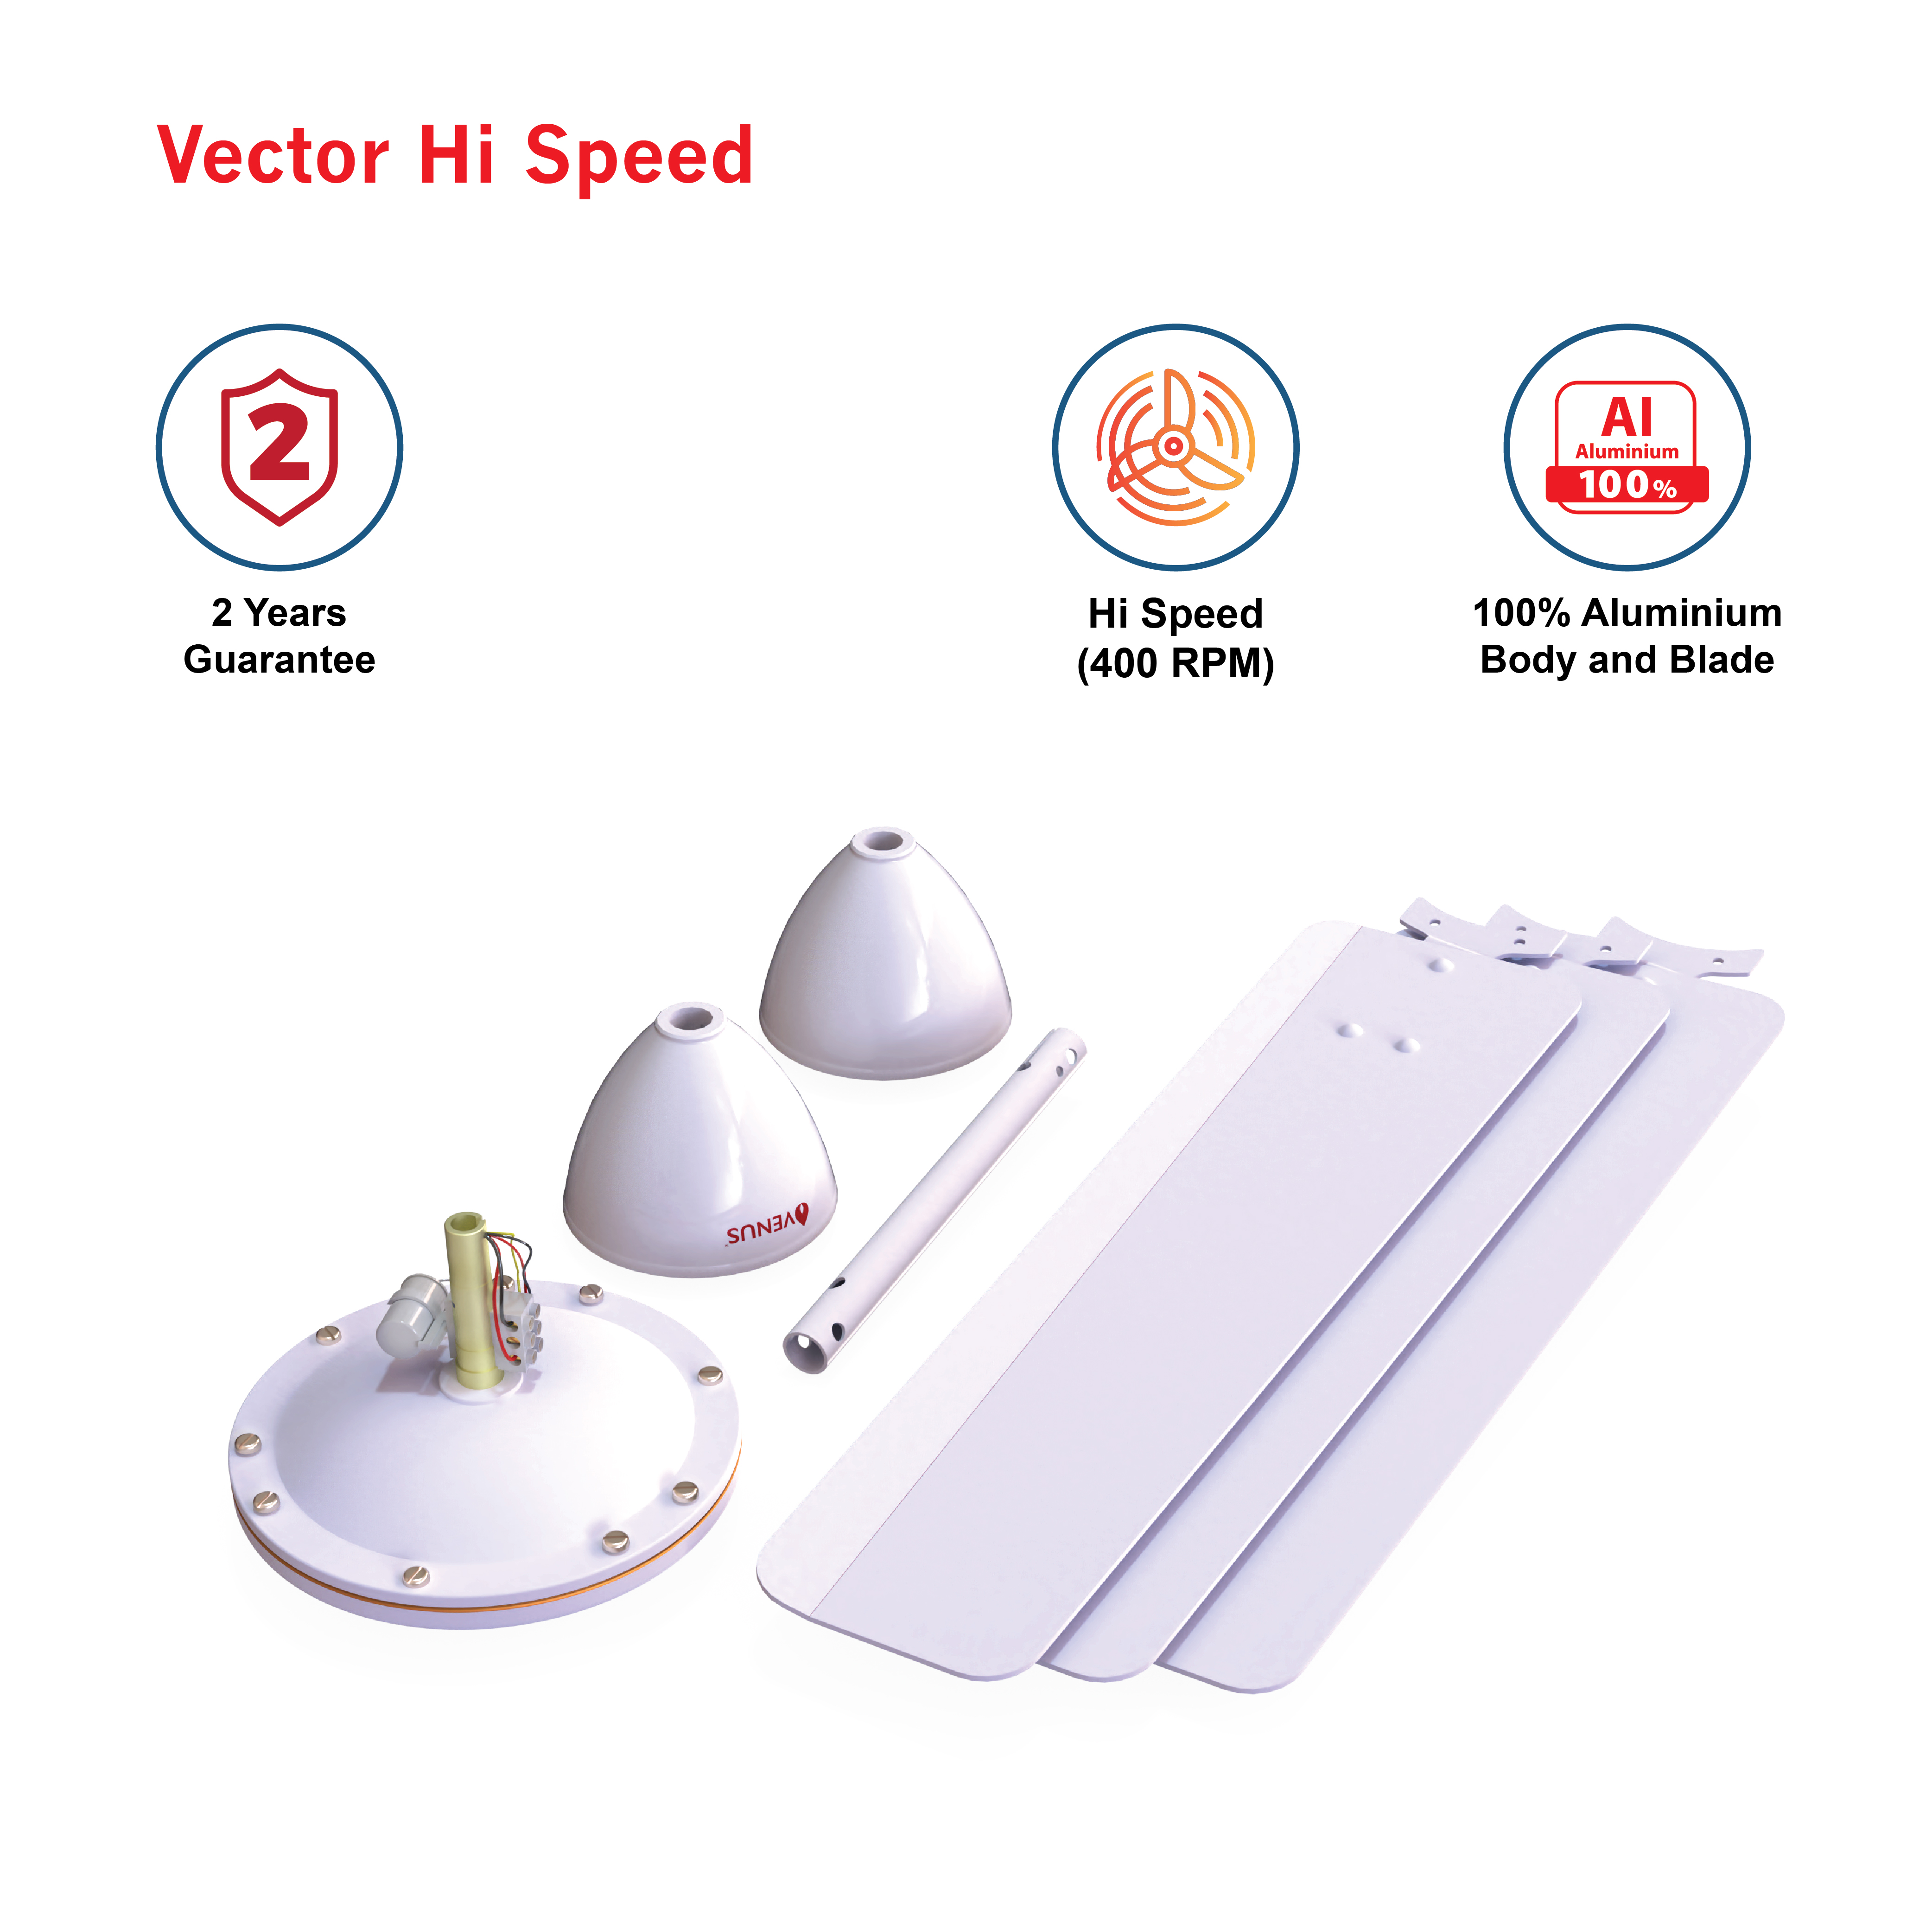 Vector-Hi-speed - V1050mm